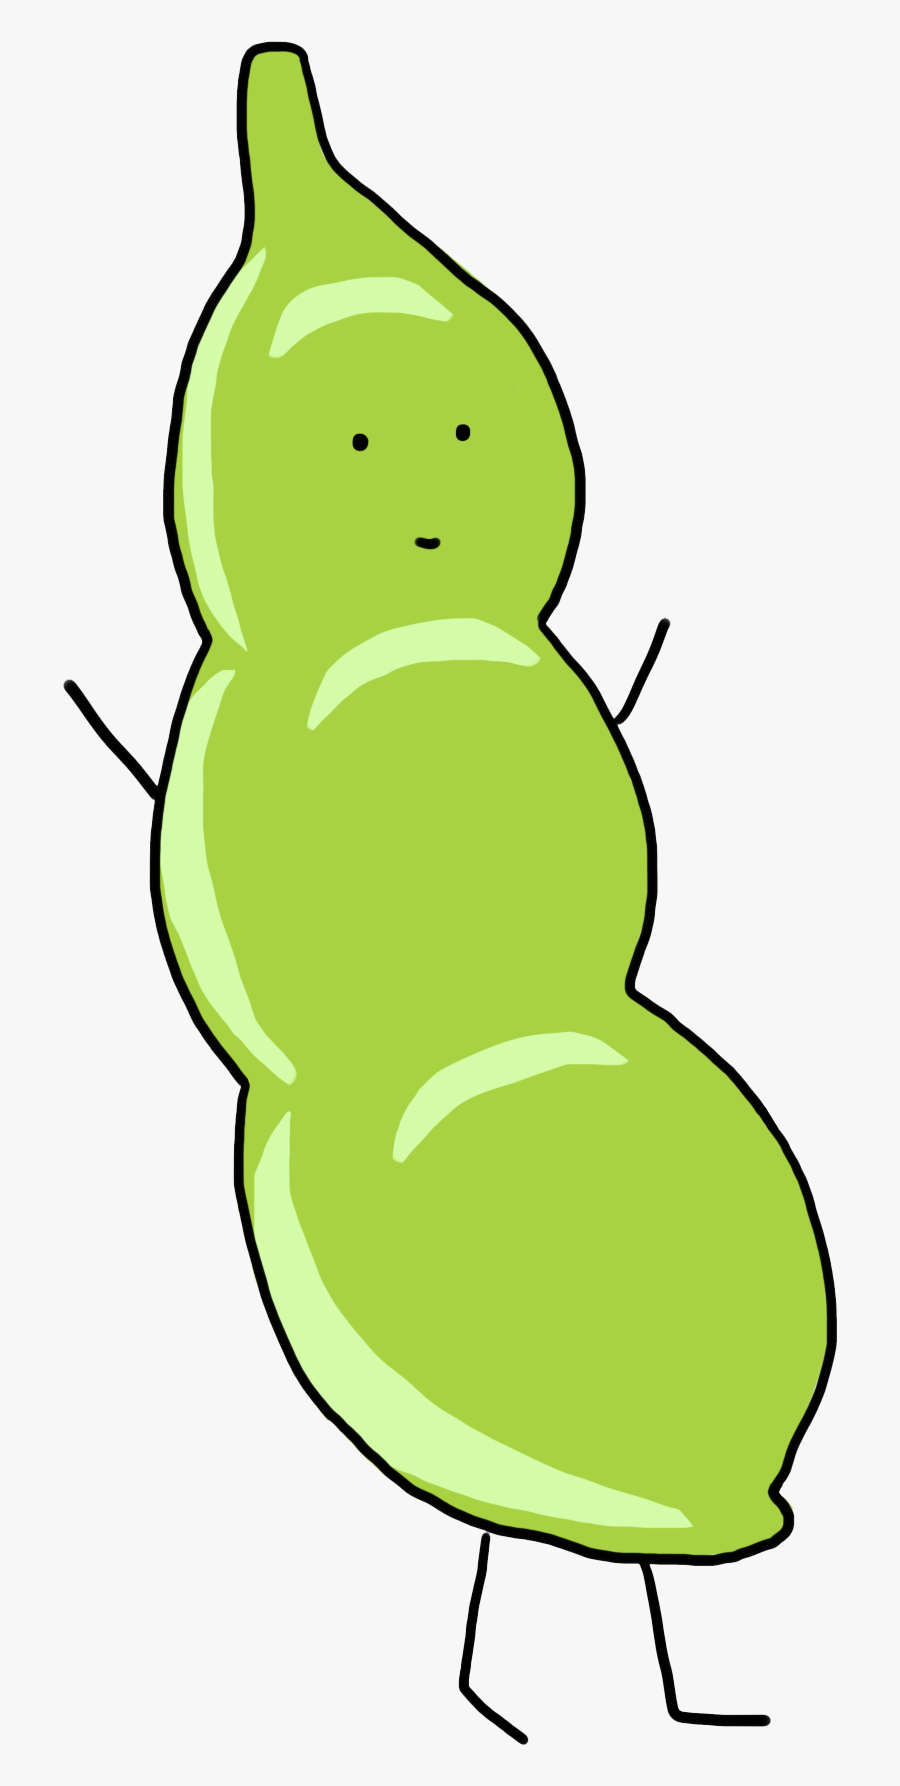 Cute Peas Cartoon Soybean Drawing Free Hq Image Clipart - Cute Cartoon Peas, Transparent Clipart